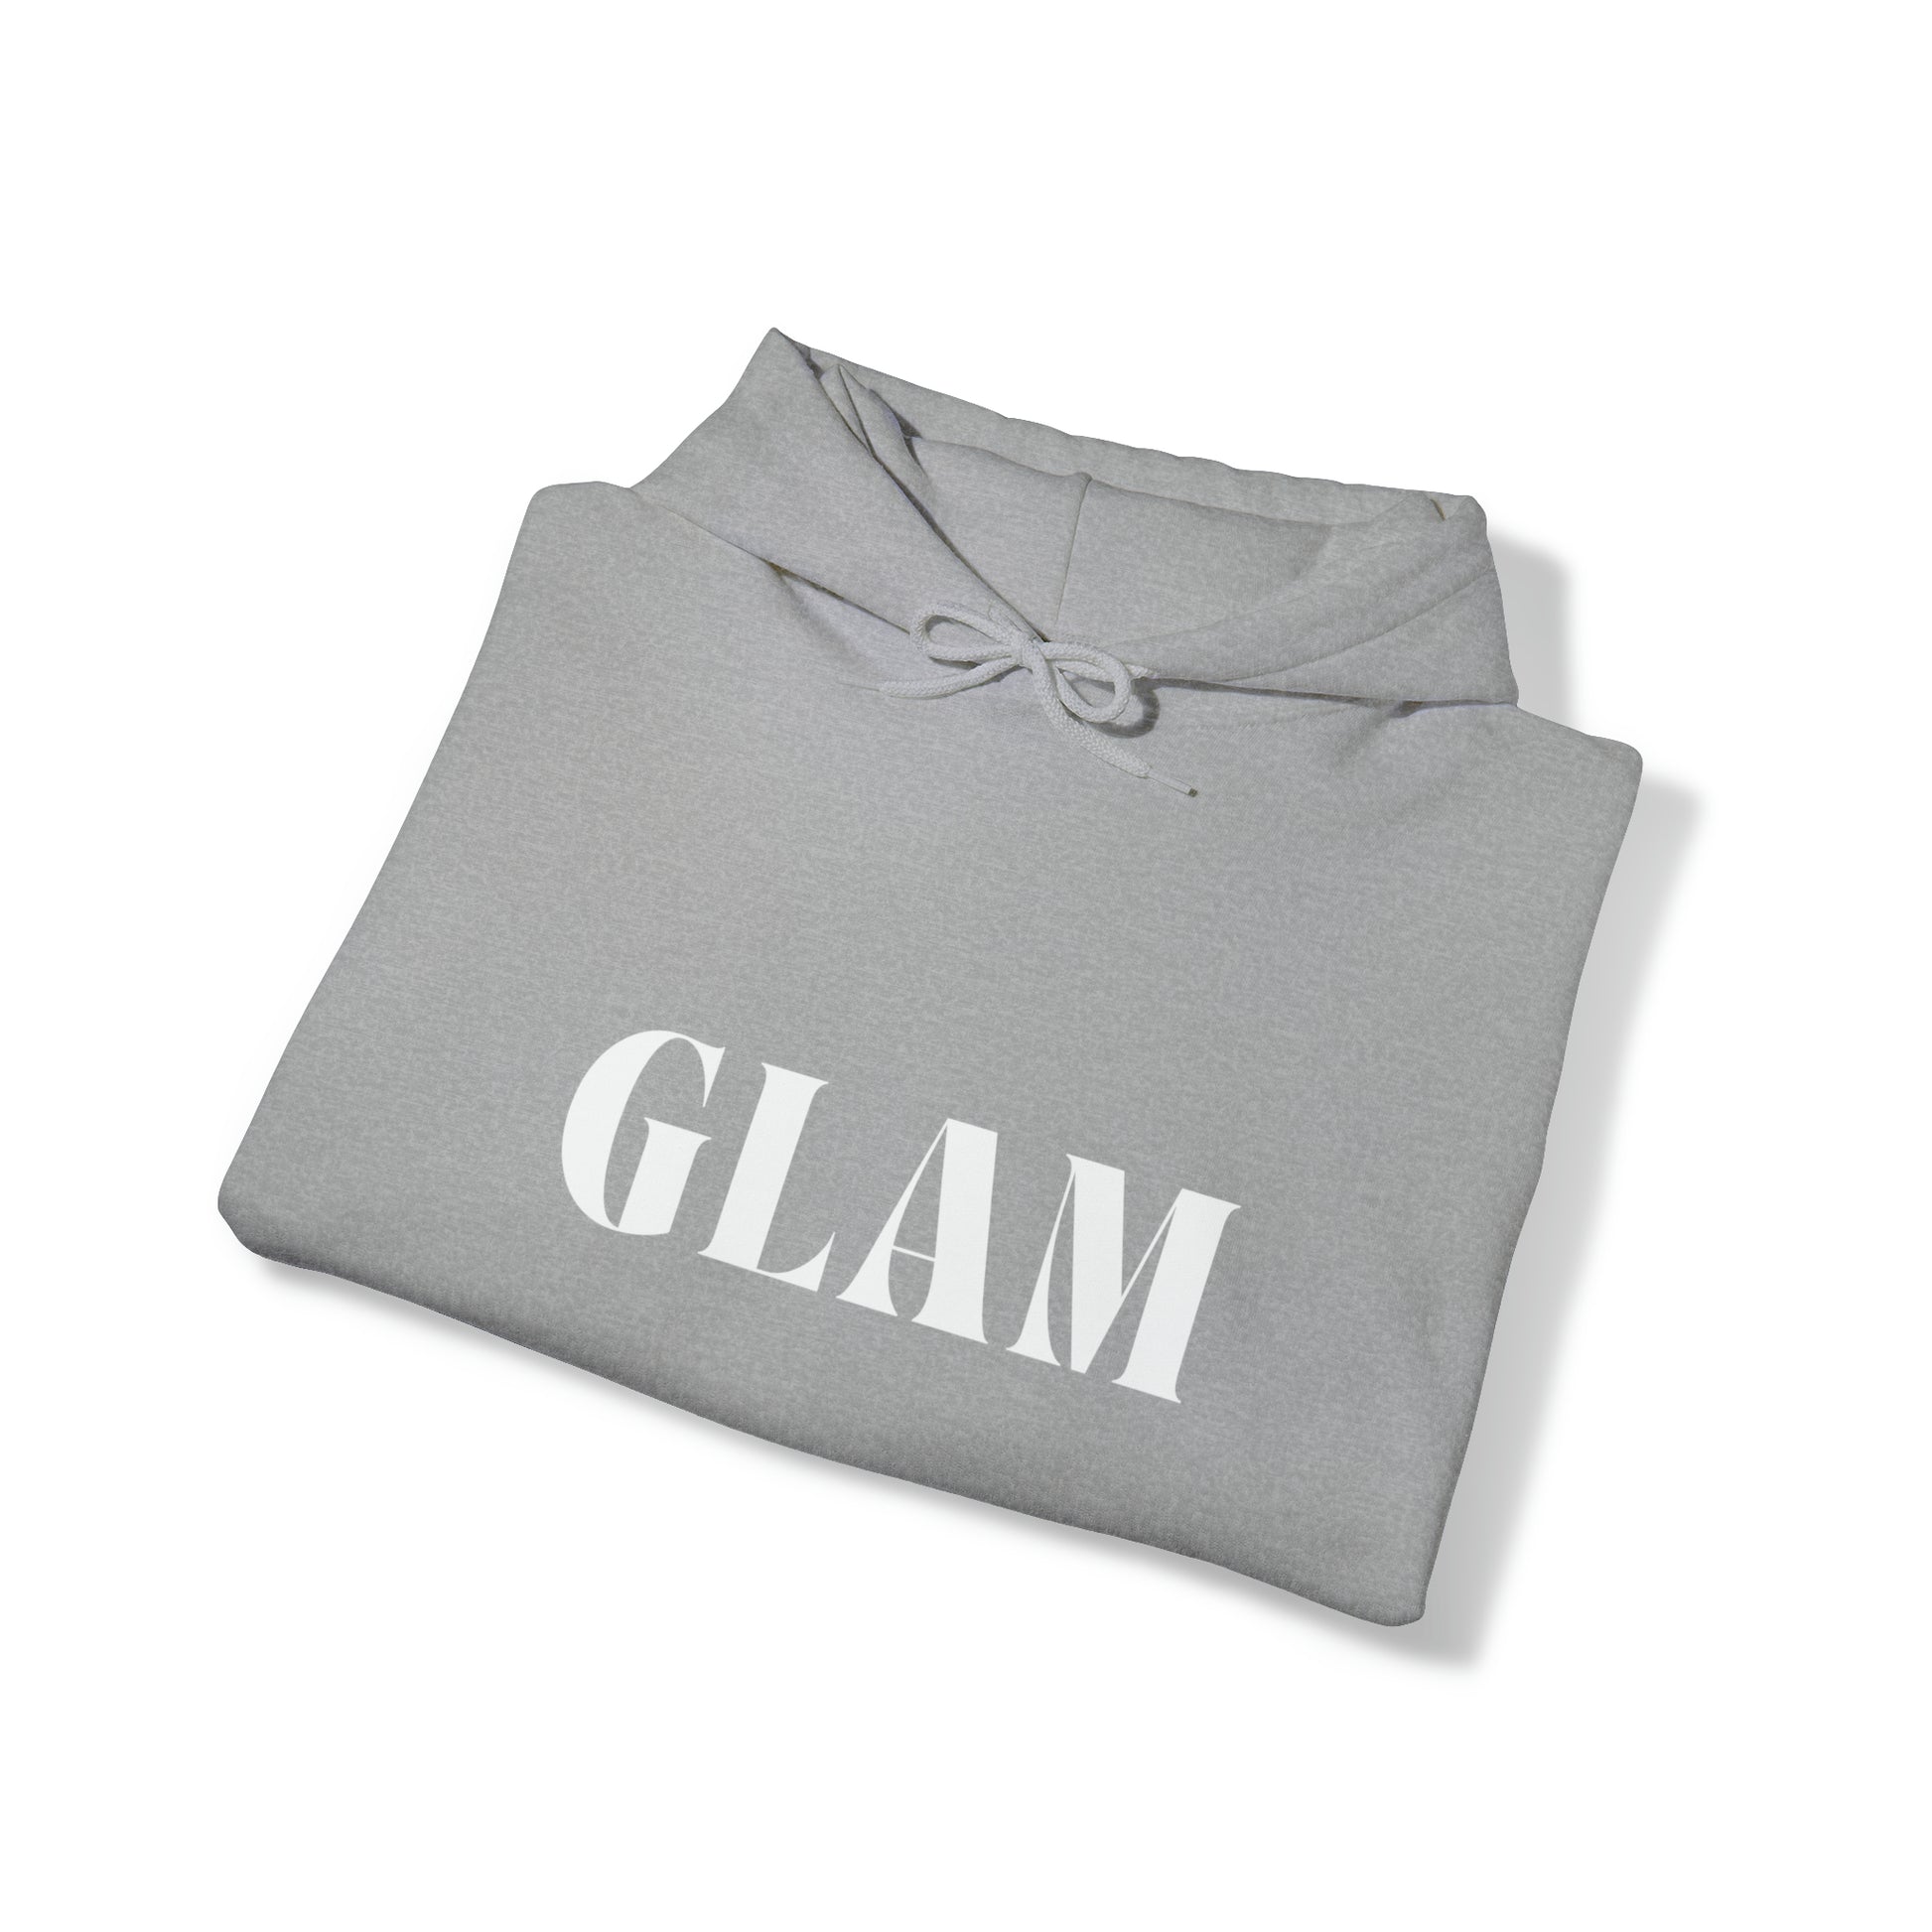   Glam Hoodie from HoodySZN.com